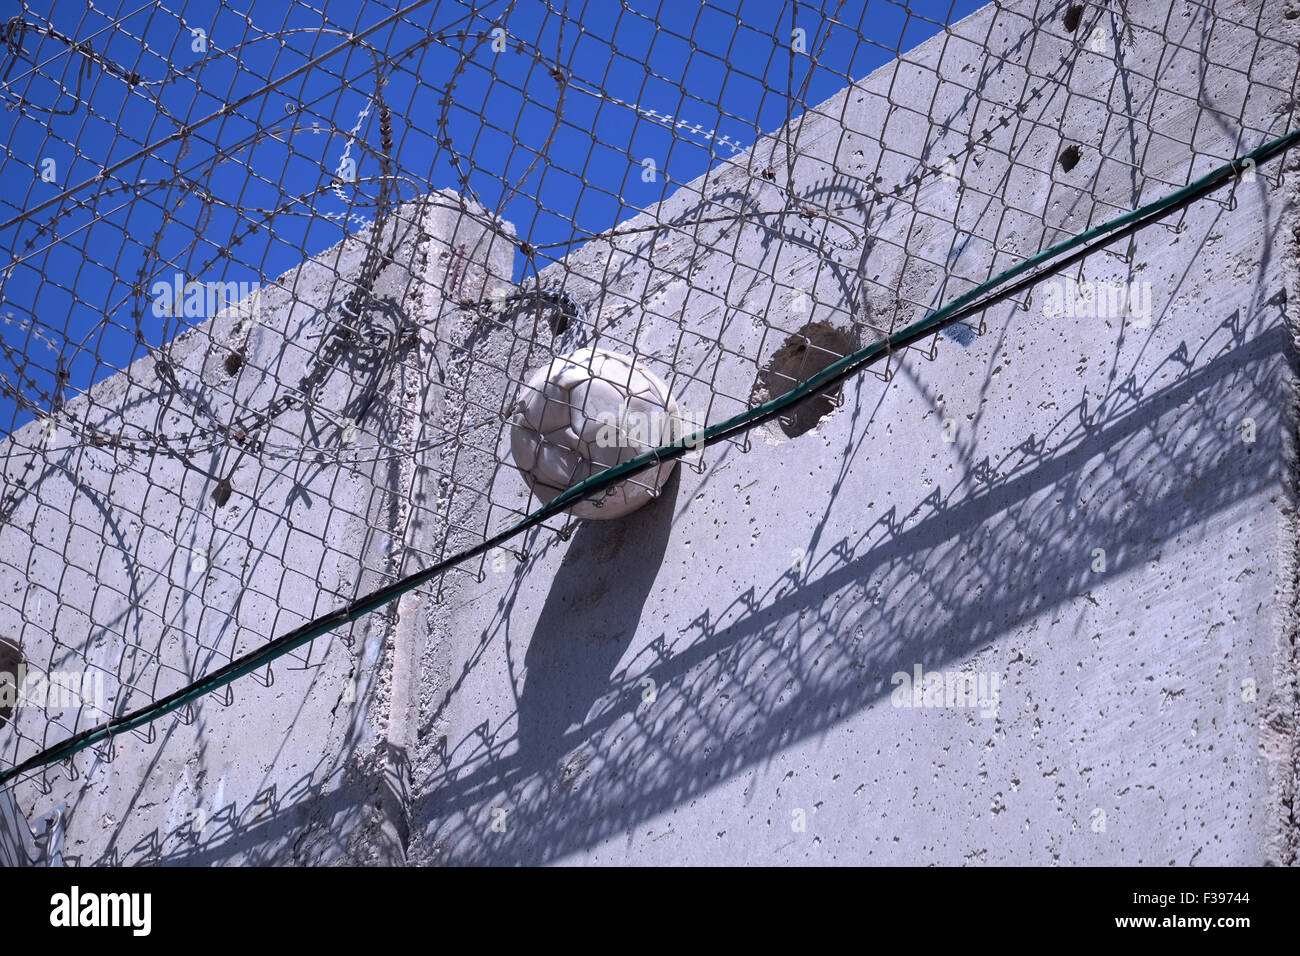 Un football coincé dans des fils barbelés au niveau de l'énorme barrière de séparation de Cisjordanie construite par Israël à Abu dis ou Abu Deis, une communauté palestinienne appartenant au gouvernorat palestinien de Jérusalem au sud-est de Jérusalem en Israël Banque D'Images